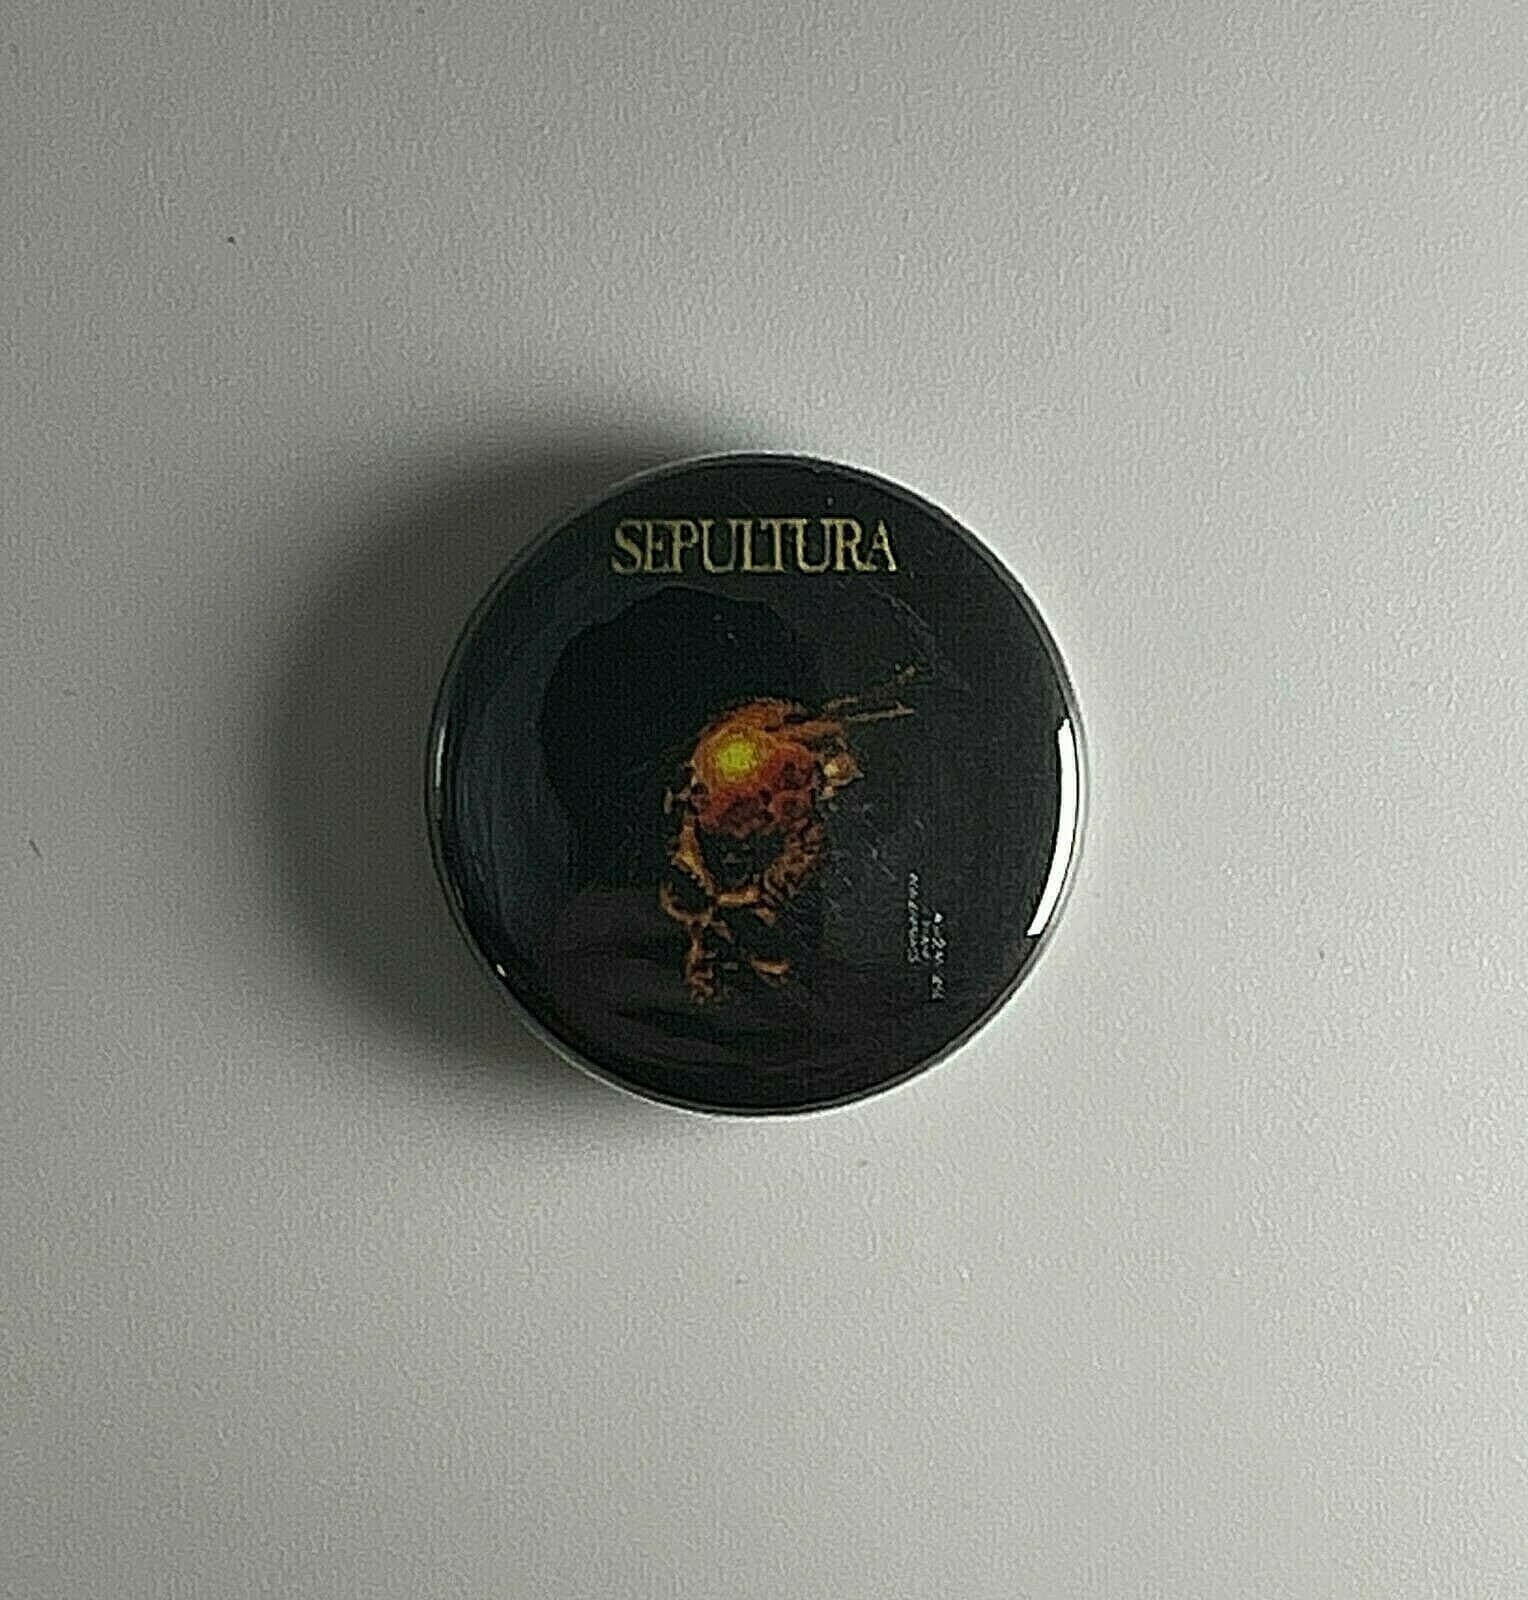 Sepultura Beneath The Remains 1" Button S027B Anstecknadel von Heavylowmerchandise